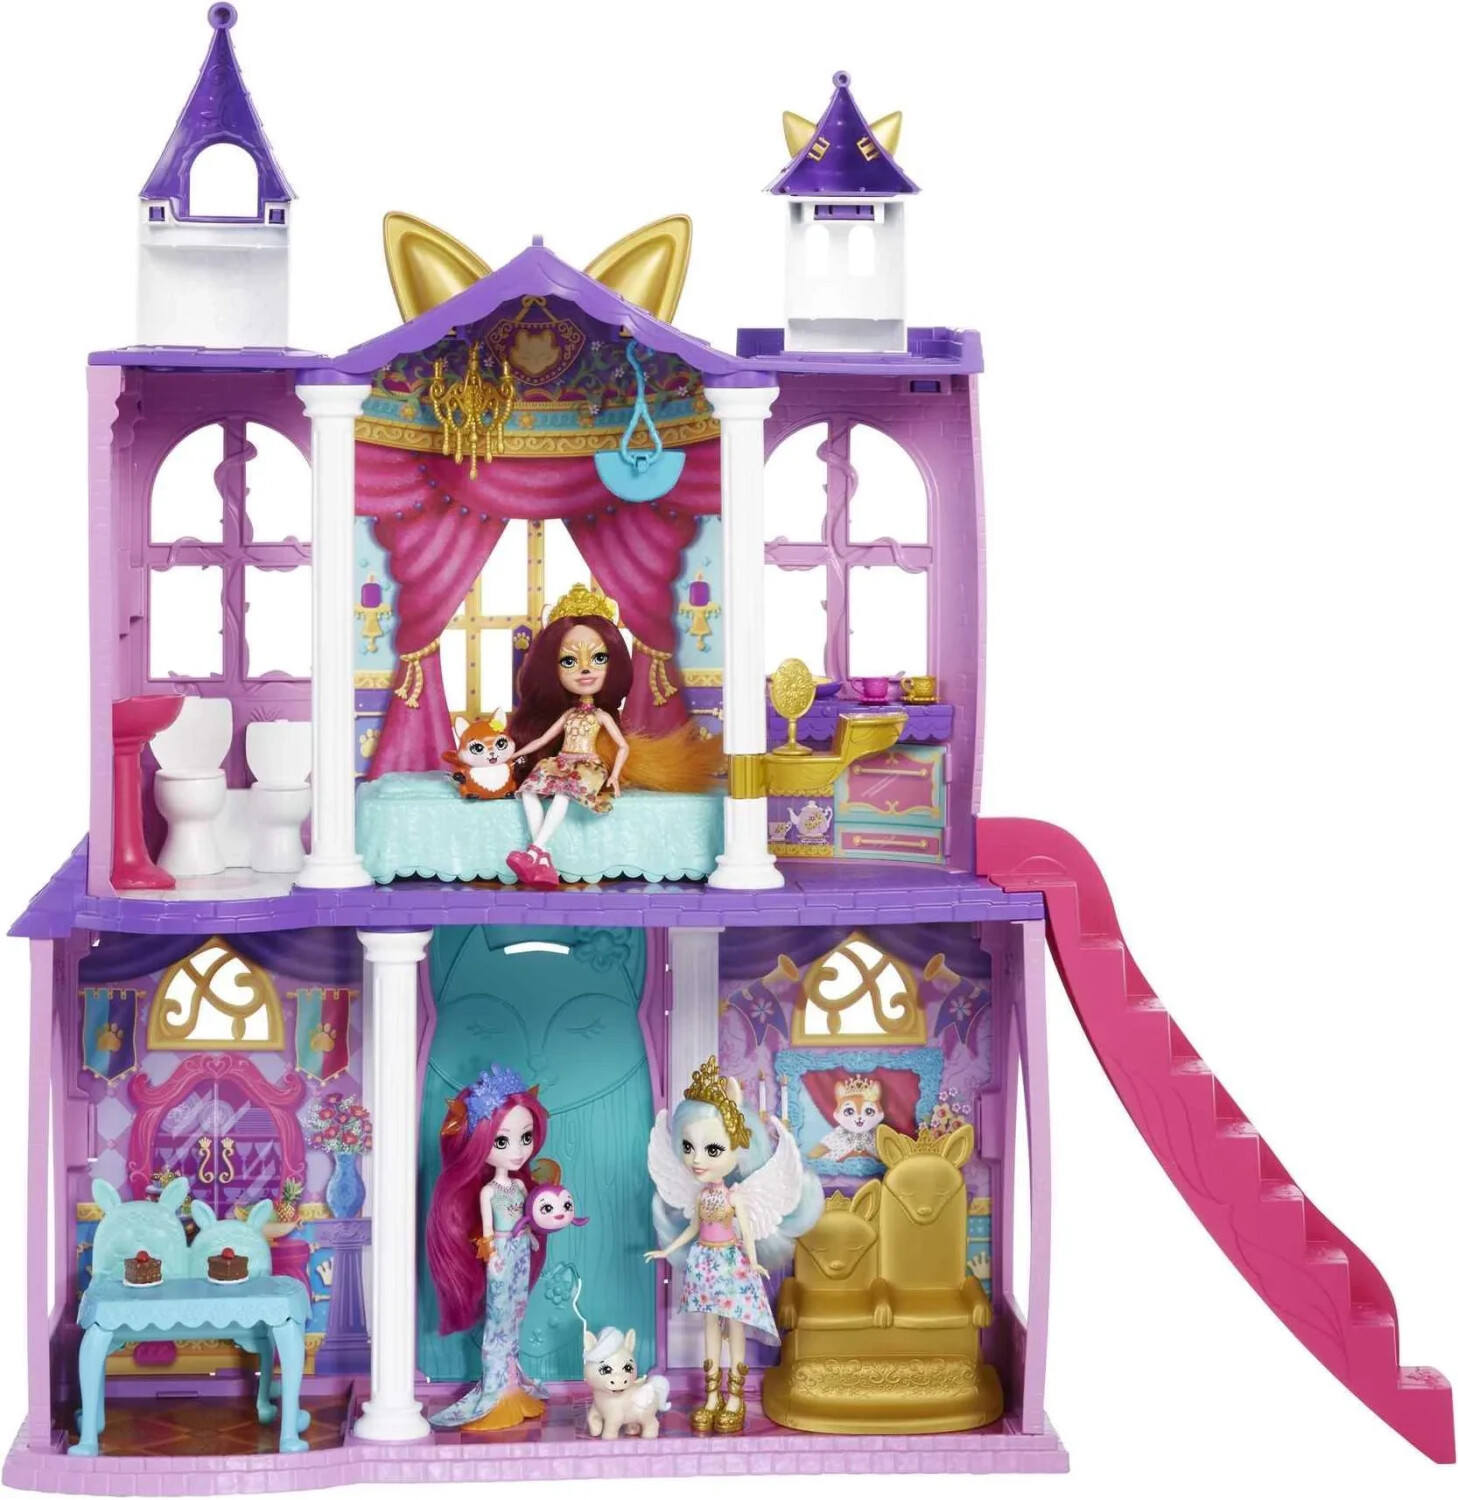 Soldes Mattel Royal Enchantimals Ocean Kingdom 2024 au meilleur prix sur